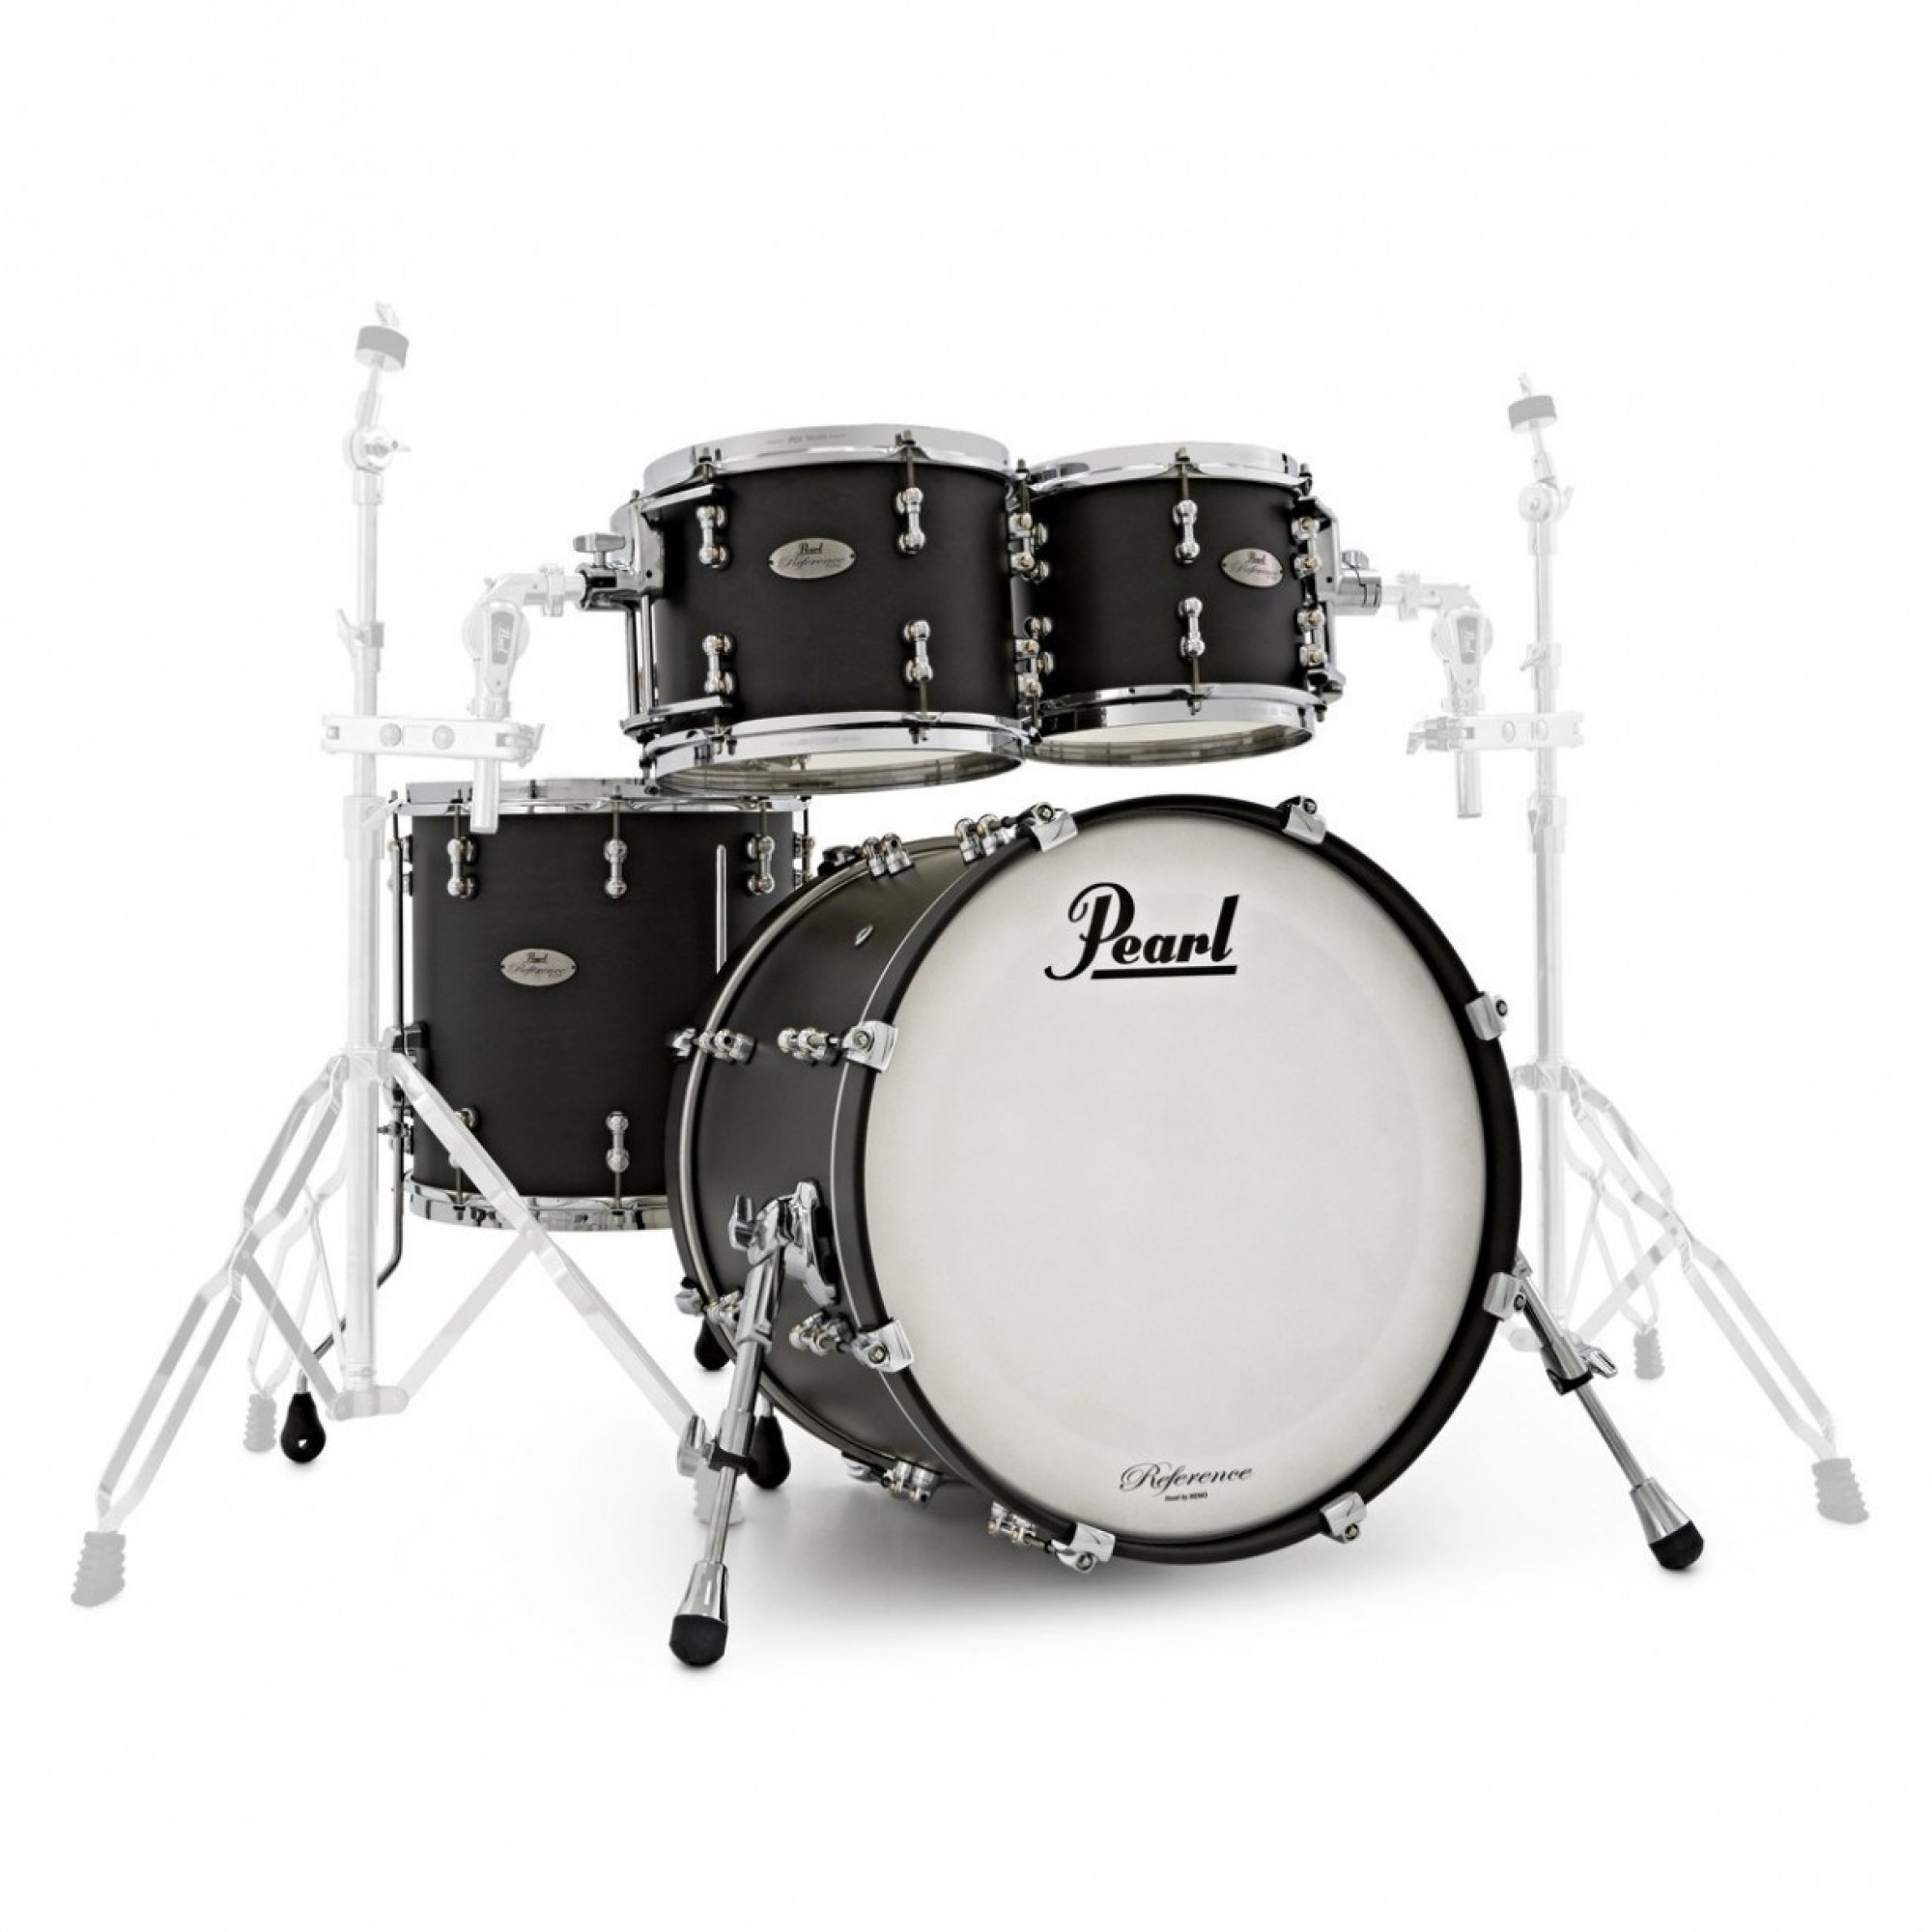 pearl drums